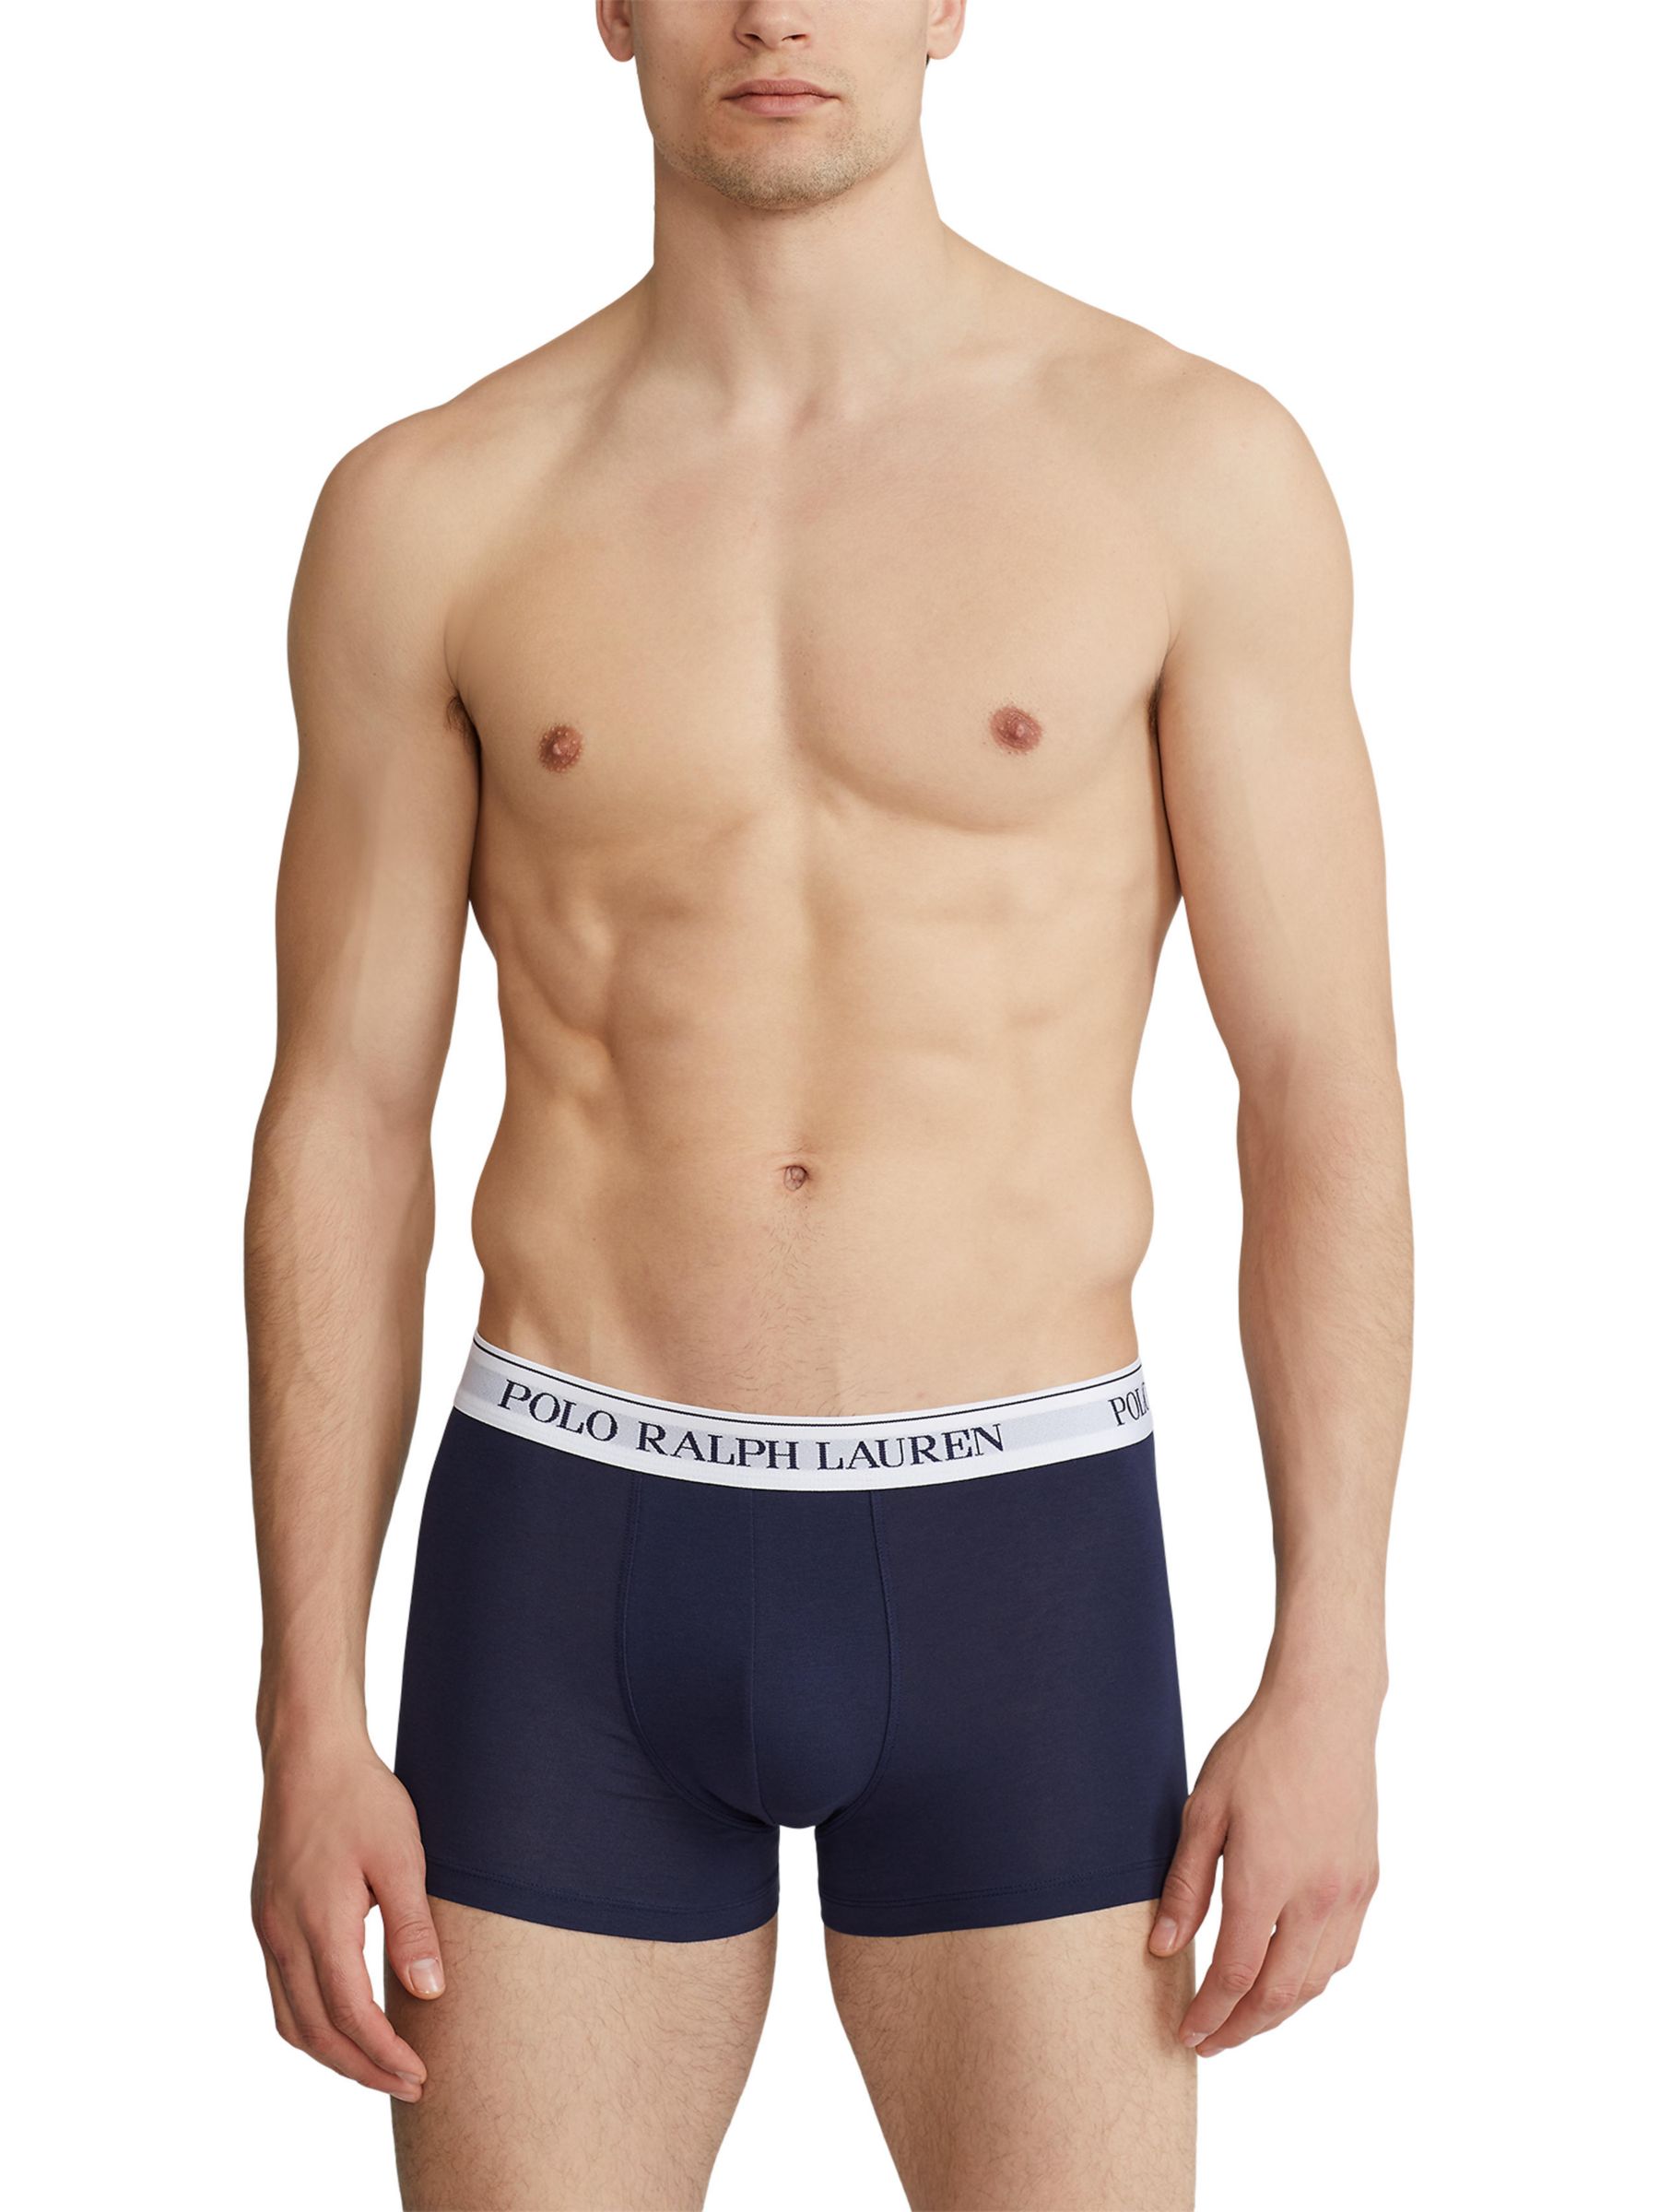 Polo Ralph Lauren Underwear Stretch Cotton Boxer Brief 3-pack - Boxers 